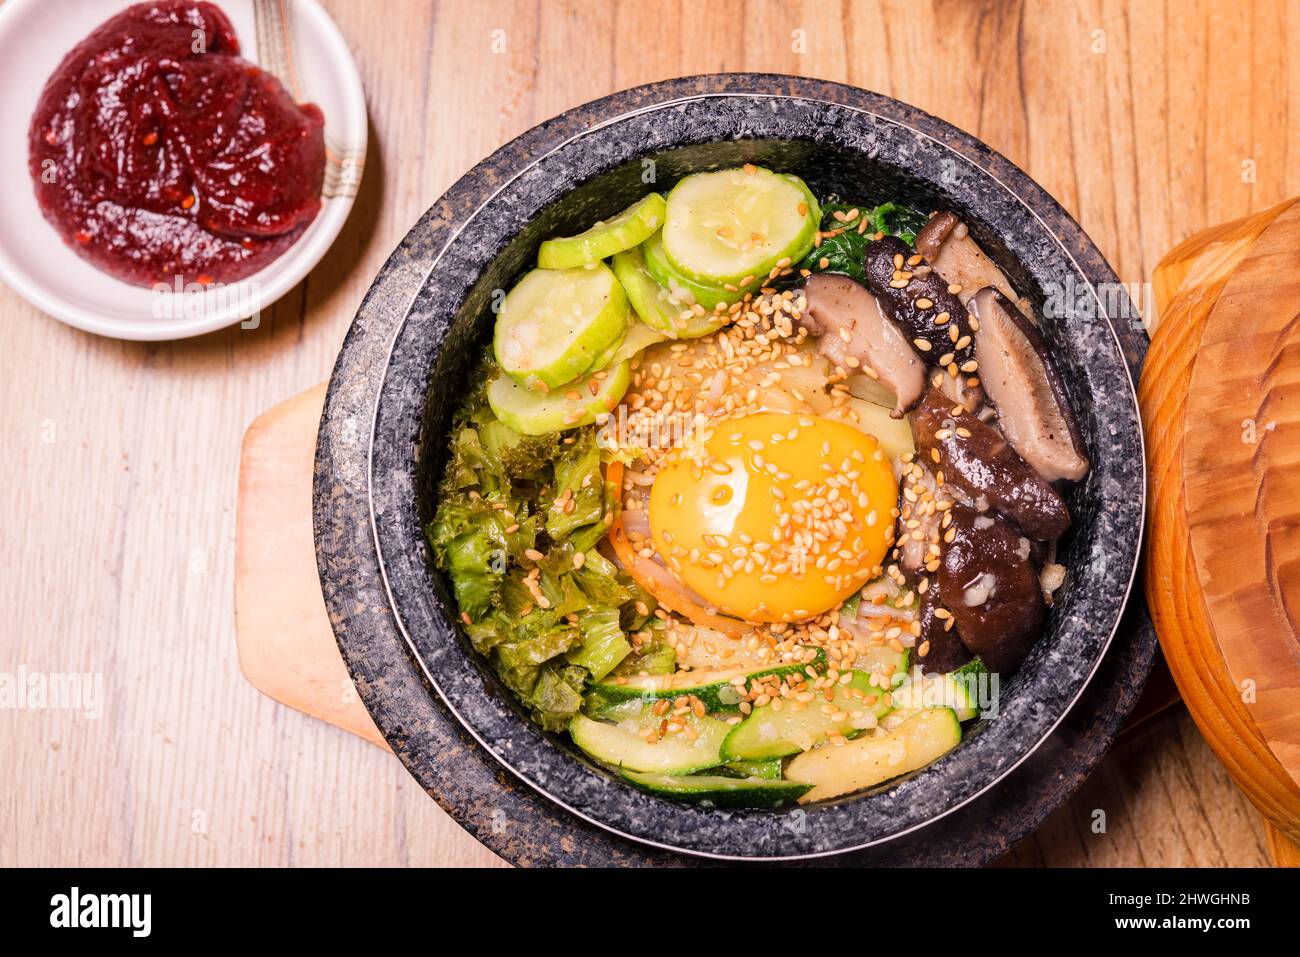 Bibimbap dans un bol en pierre noir chauffé, plat traditionnel coréen -  bibimbap mélange de riz avec des légumes incluent le boeuf et l'oeuf frit,  la nourriture japonaise Hot pot Photo Stock -